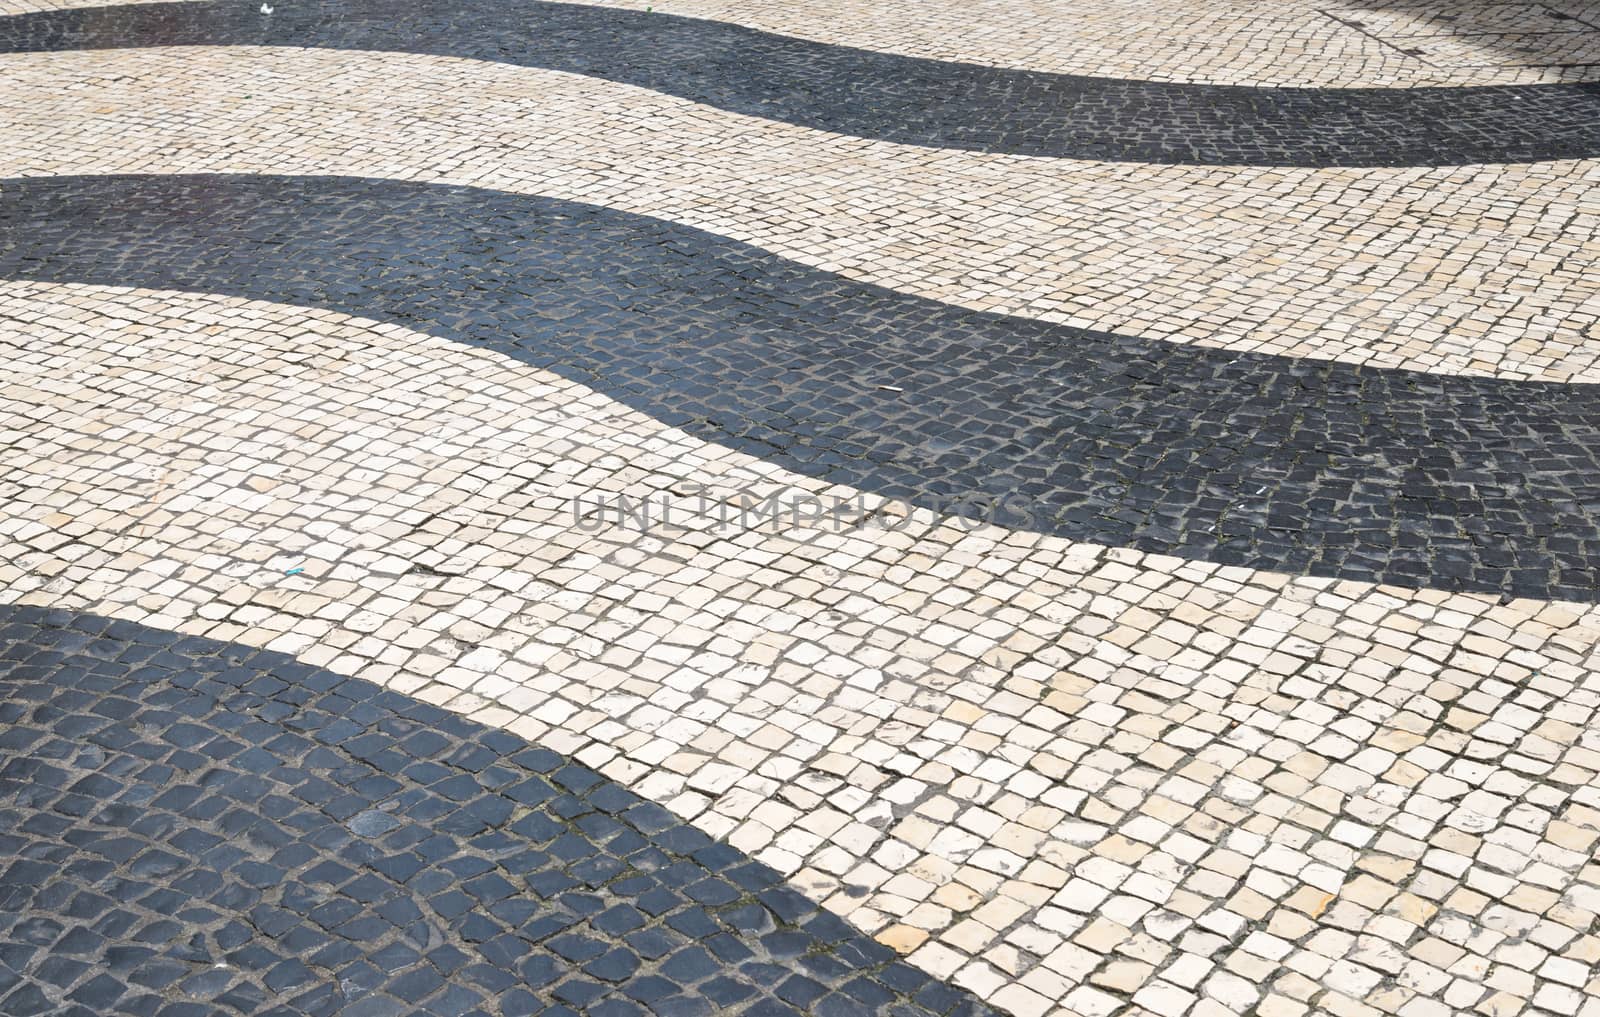 Mosaic in footpath